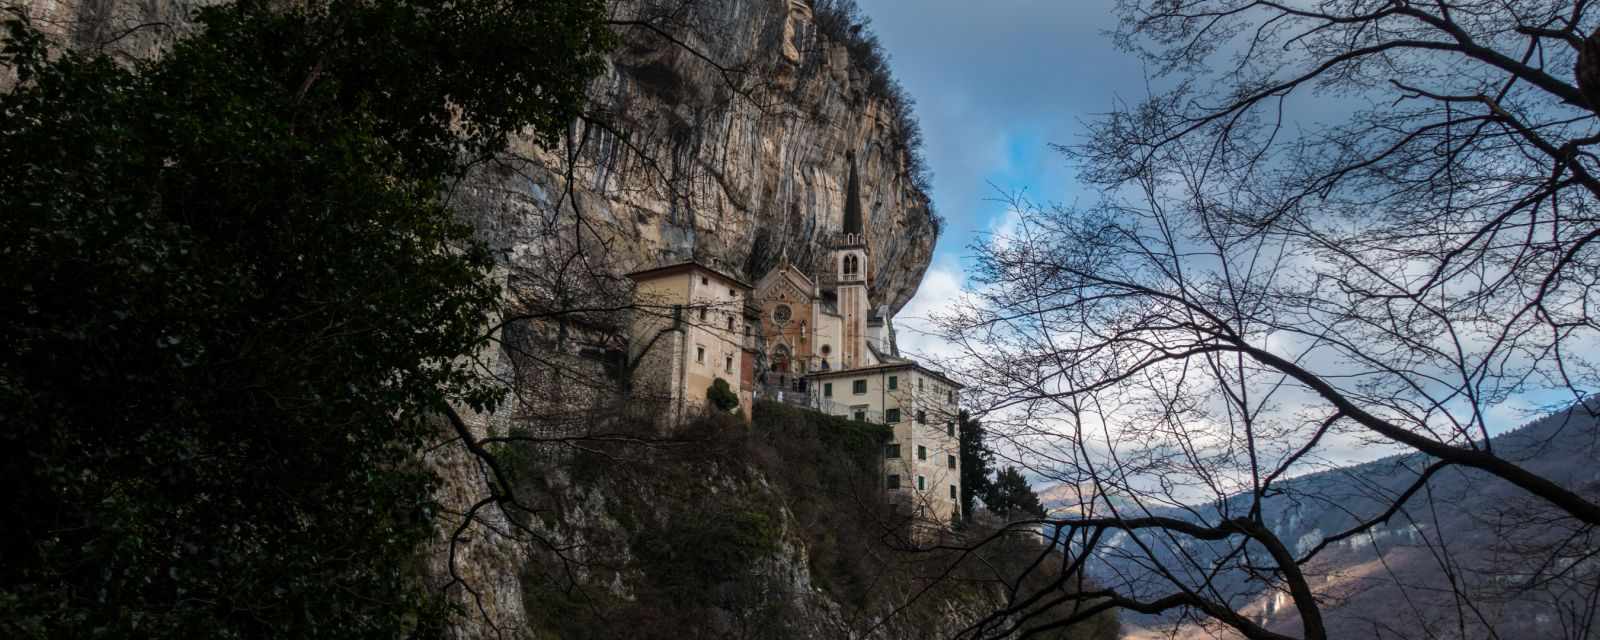 Madonna della Corona at Lake Garda - How to Get Here and Photos